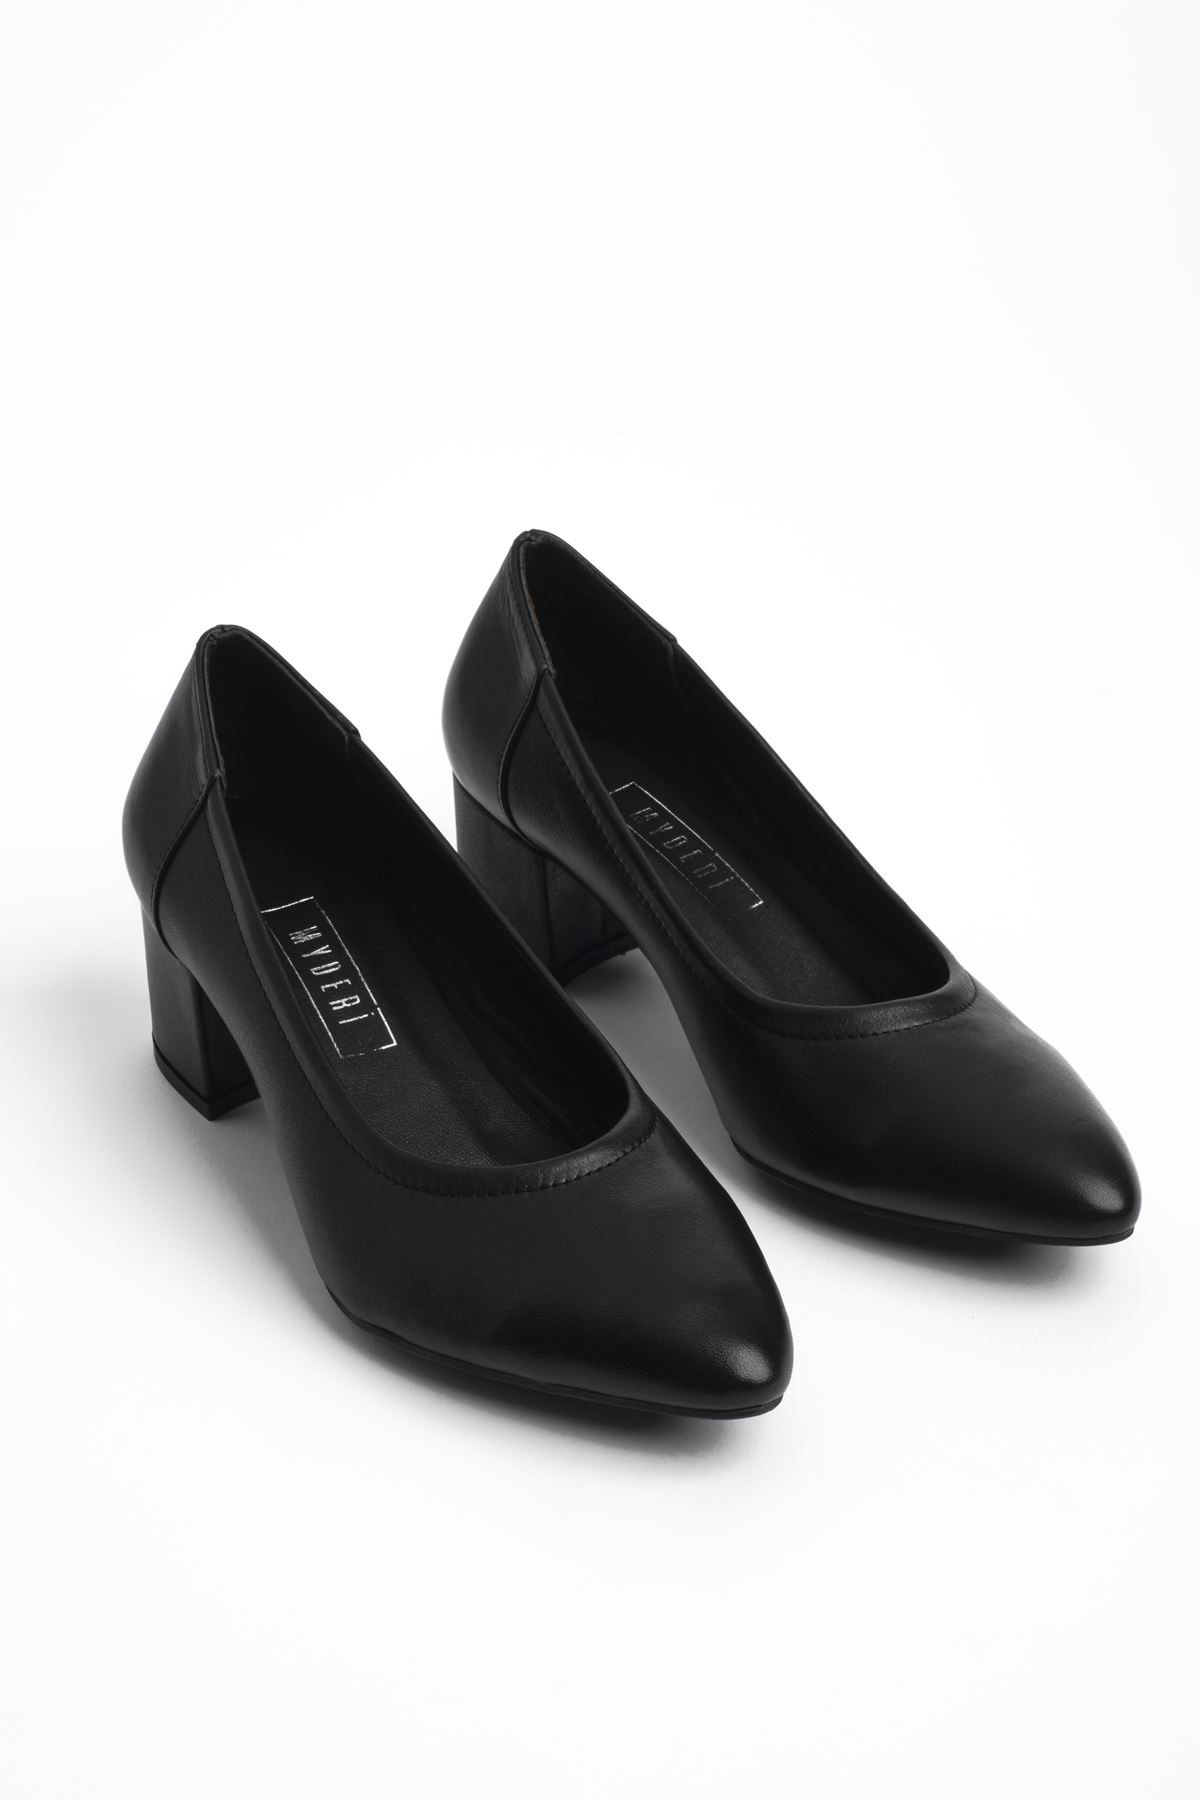 Virtus Kadın Hakiki Deri Topuklu Ayakkabı - Siyah